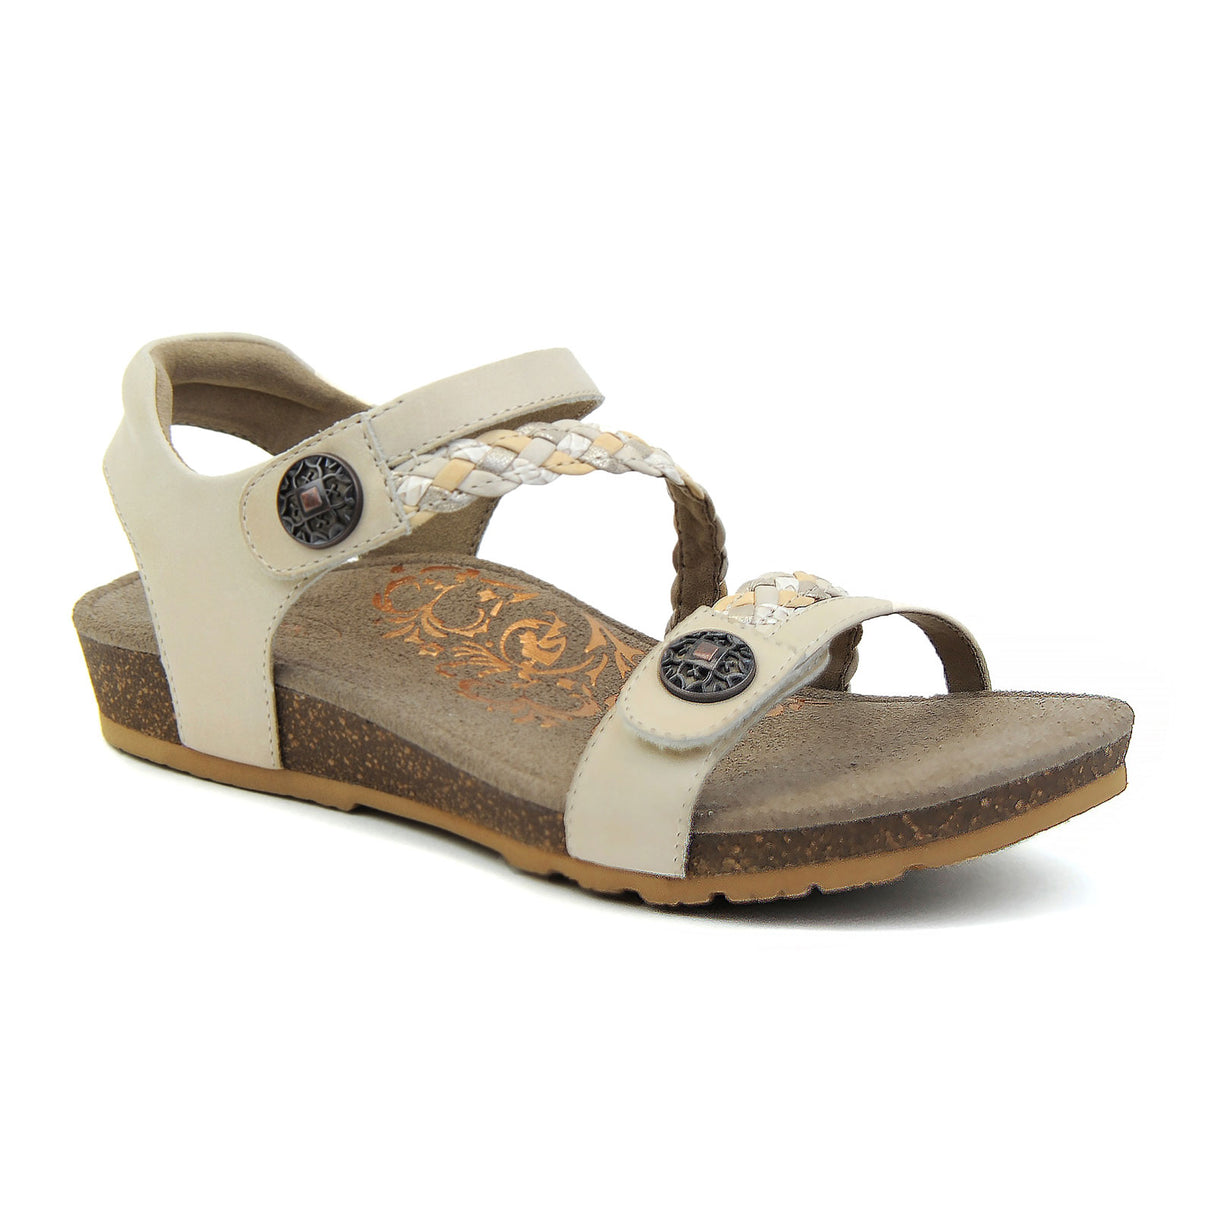 Aetrex Jillian Braided Backstrap Sandal (Women) - Ivory Sandals - Backstrap - The Heel Shoe Fitters